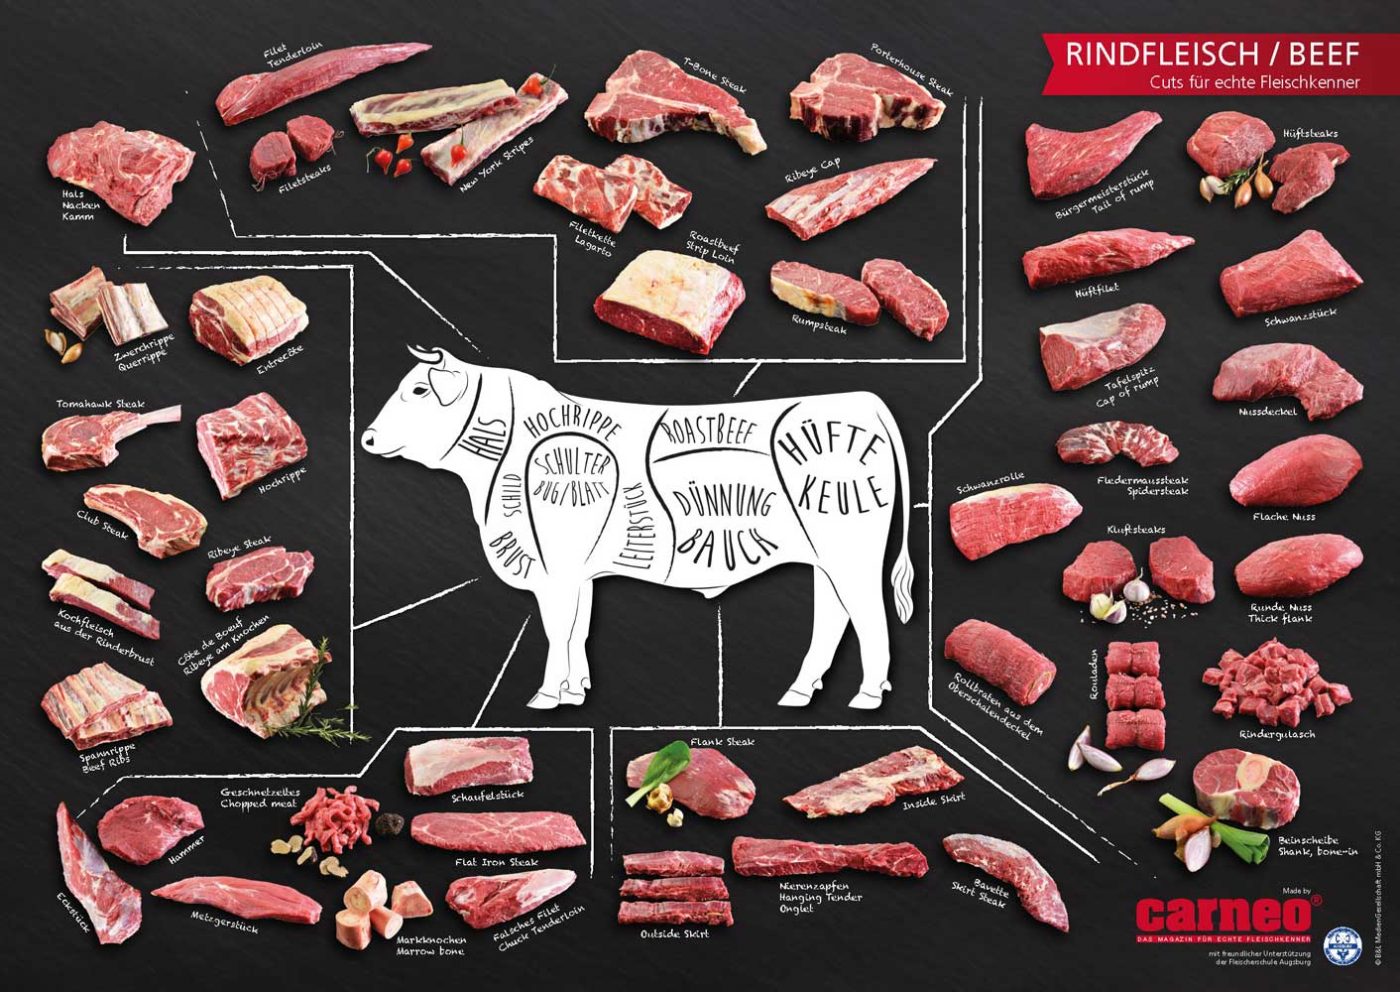 Plakat A1/A0, Motiv Rindfleisch/Beef, Cuts